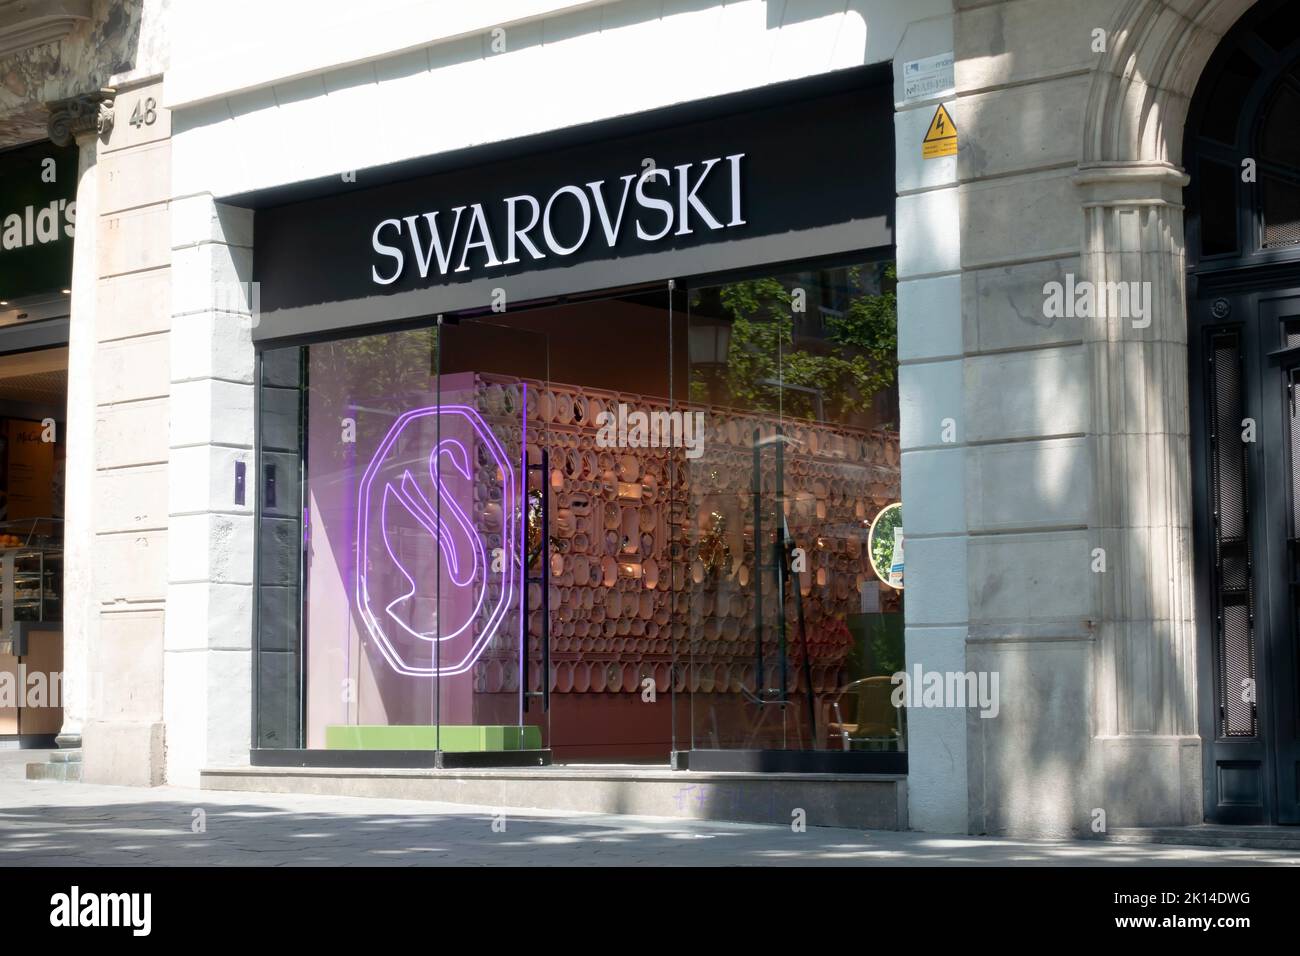 Swarovski store immagini e fotografie stock ad alta risoluzione - Alamy